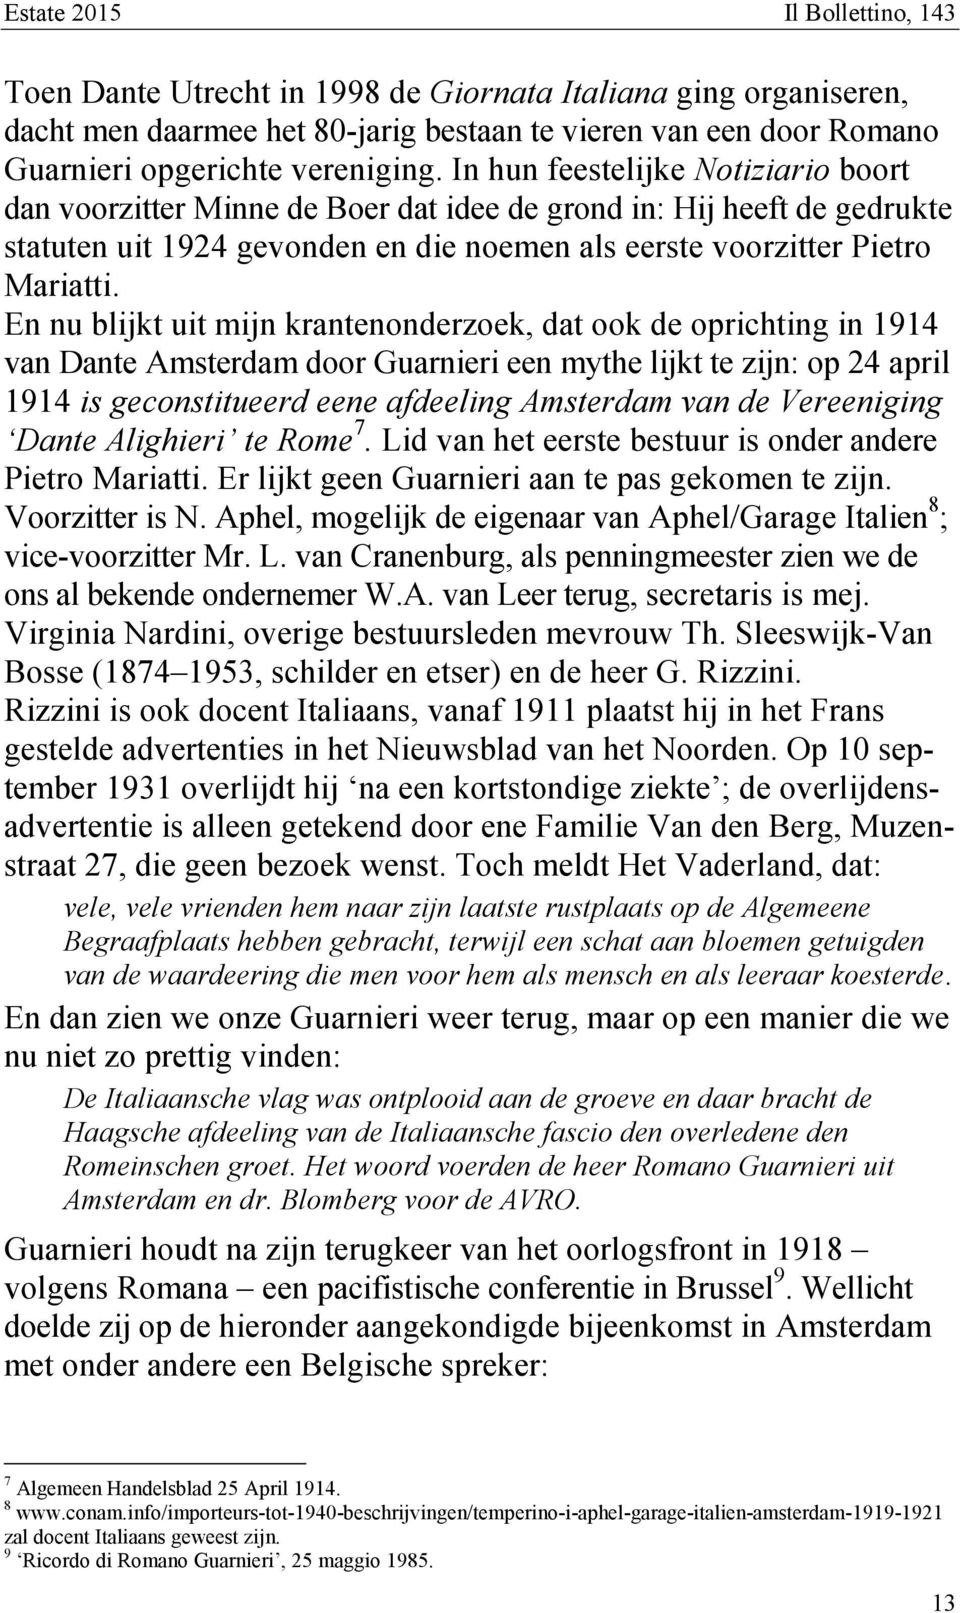 En nu blijkt uit mijn krantenonderzoek, dat ook de oprichting in 1914 van Dante Amsterdam door Guarnieri een mythe lijkt te zijn: op 24 april 1914 is geconstitueerd eene afdeeling Amsterdam van de